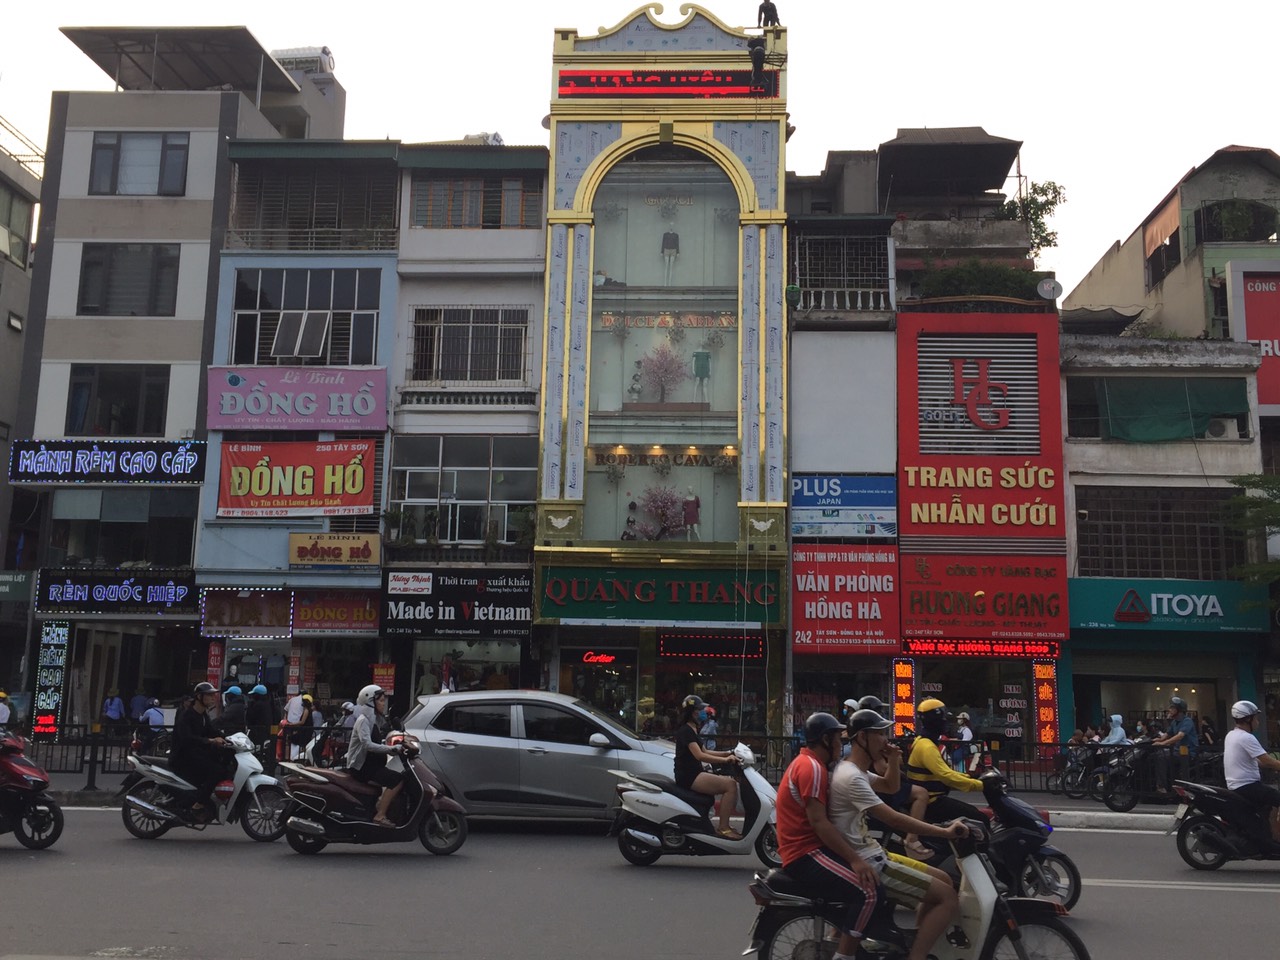 Thi công biển hiệu và trang trí đèn led tại Hà Nội Tây Sơn